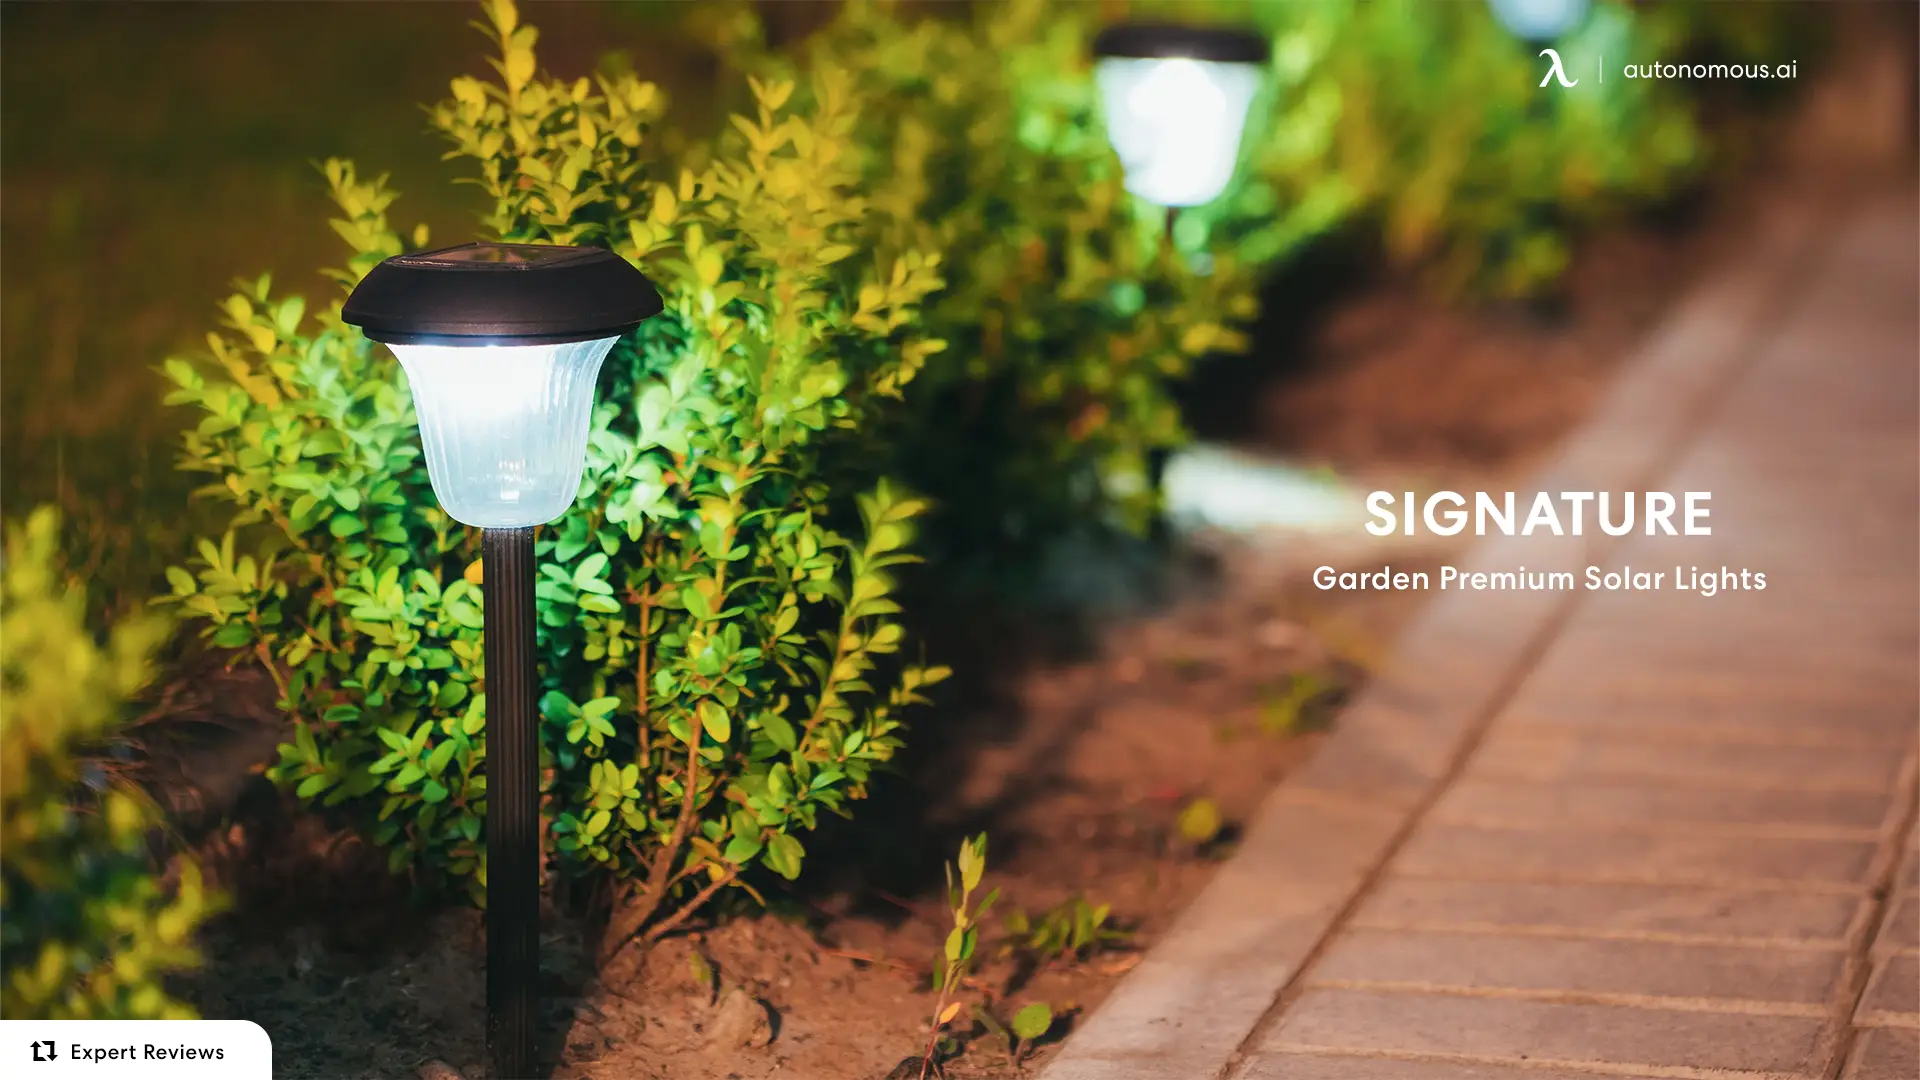 Garden Premium Solar Lights from Signature